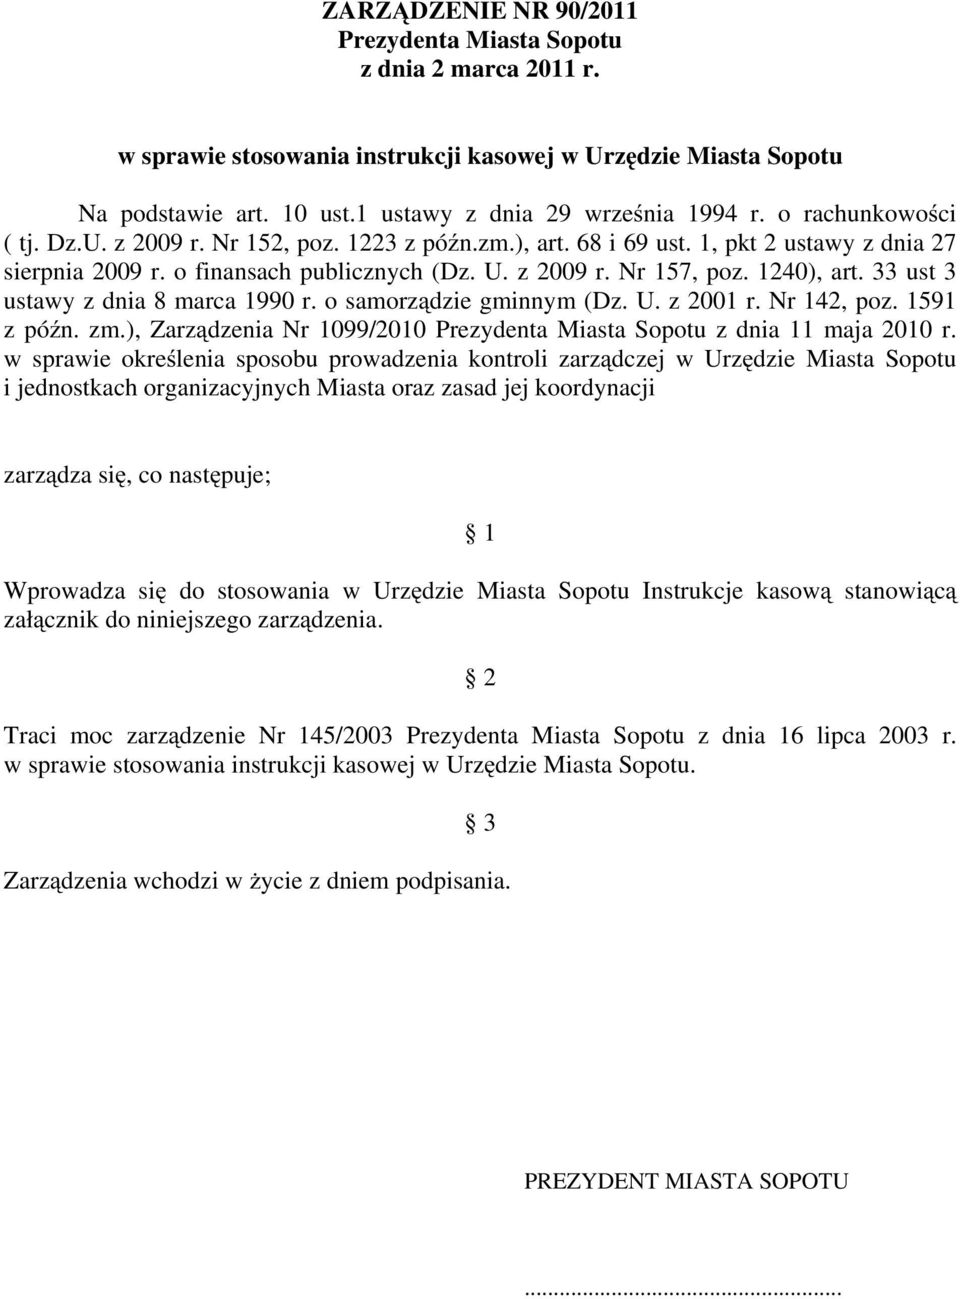 33 ust 3 ustawy z dnia 8 marca 1990 r. o samorządzie gminnym (Dz. U. z 2001 r. Nr 142, poz. 1591 z późn. zm.), Zarządzenia Nr 1099/2010 Prezydenta Miasta Sopotu z dnia 11 maja 2010 r.